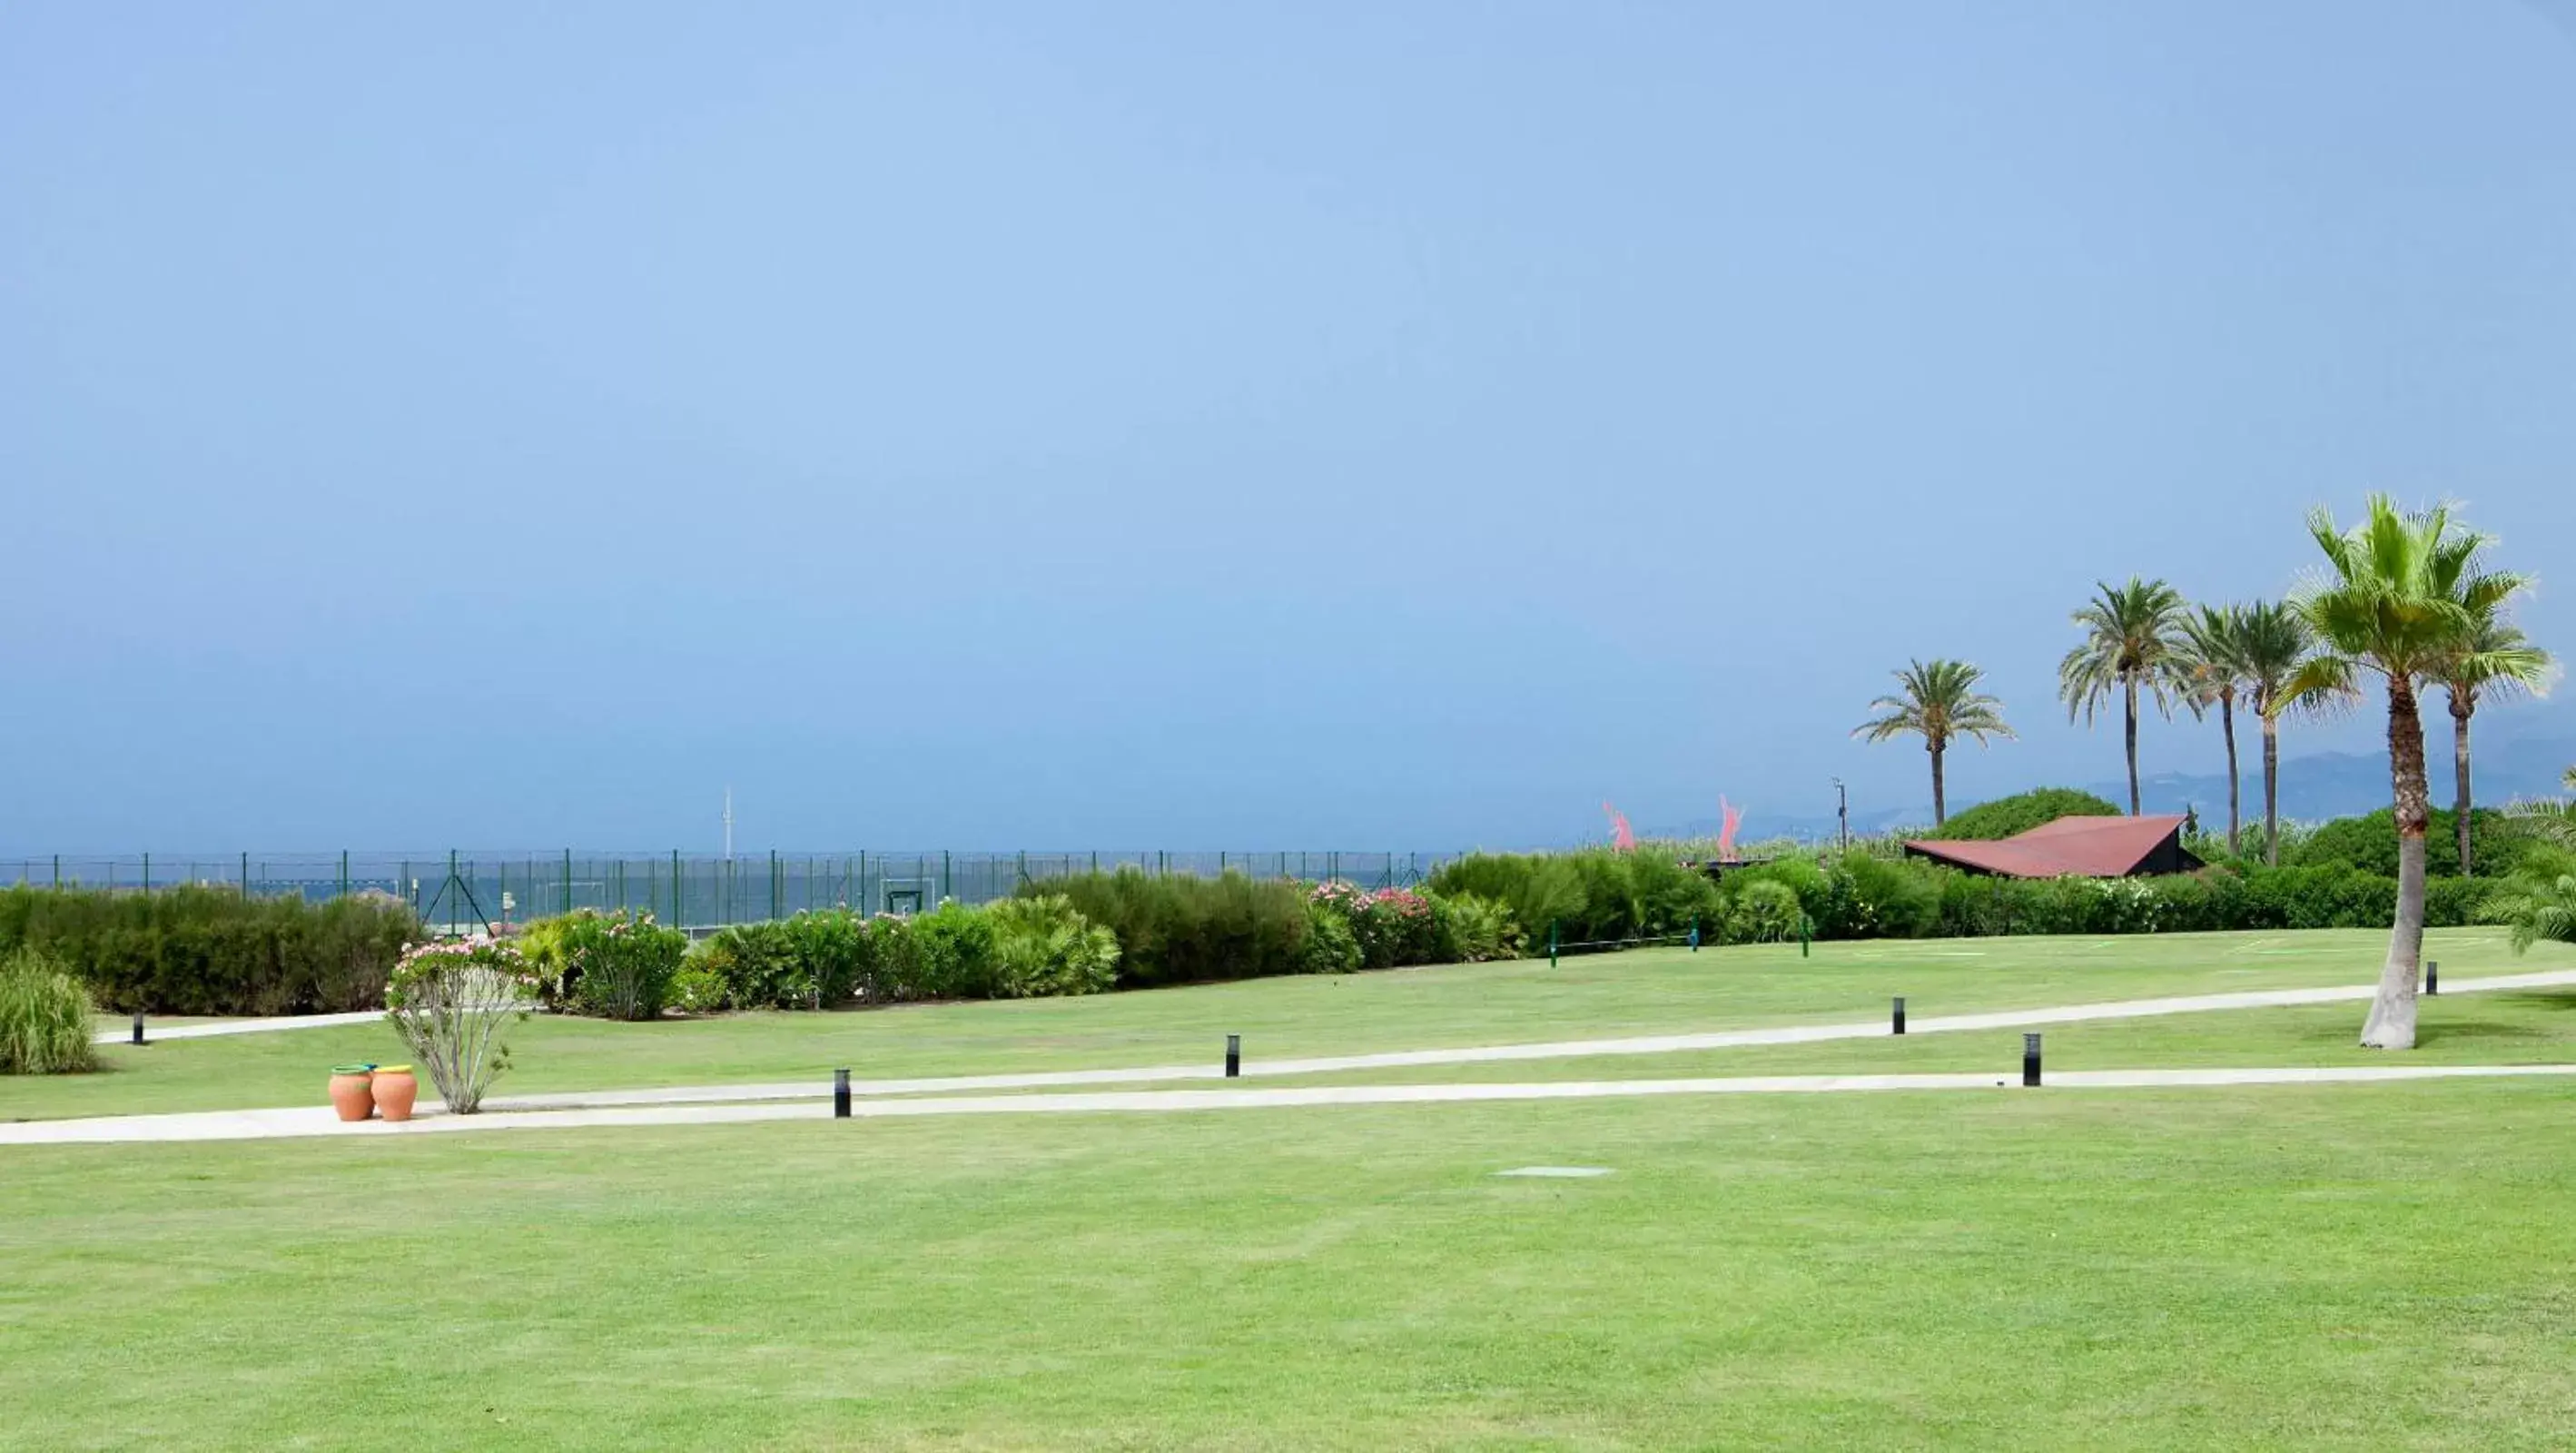 Garden, Other Activities in Impressive Playa Granada Golf